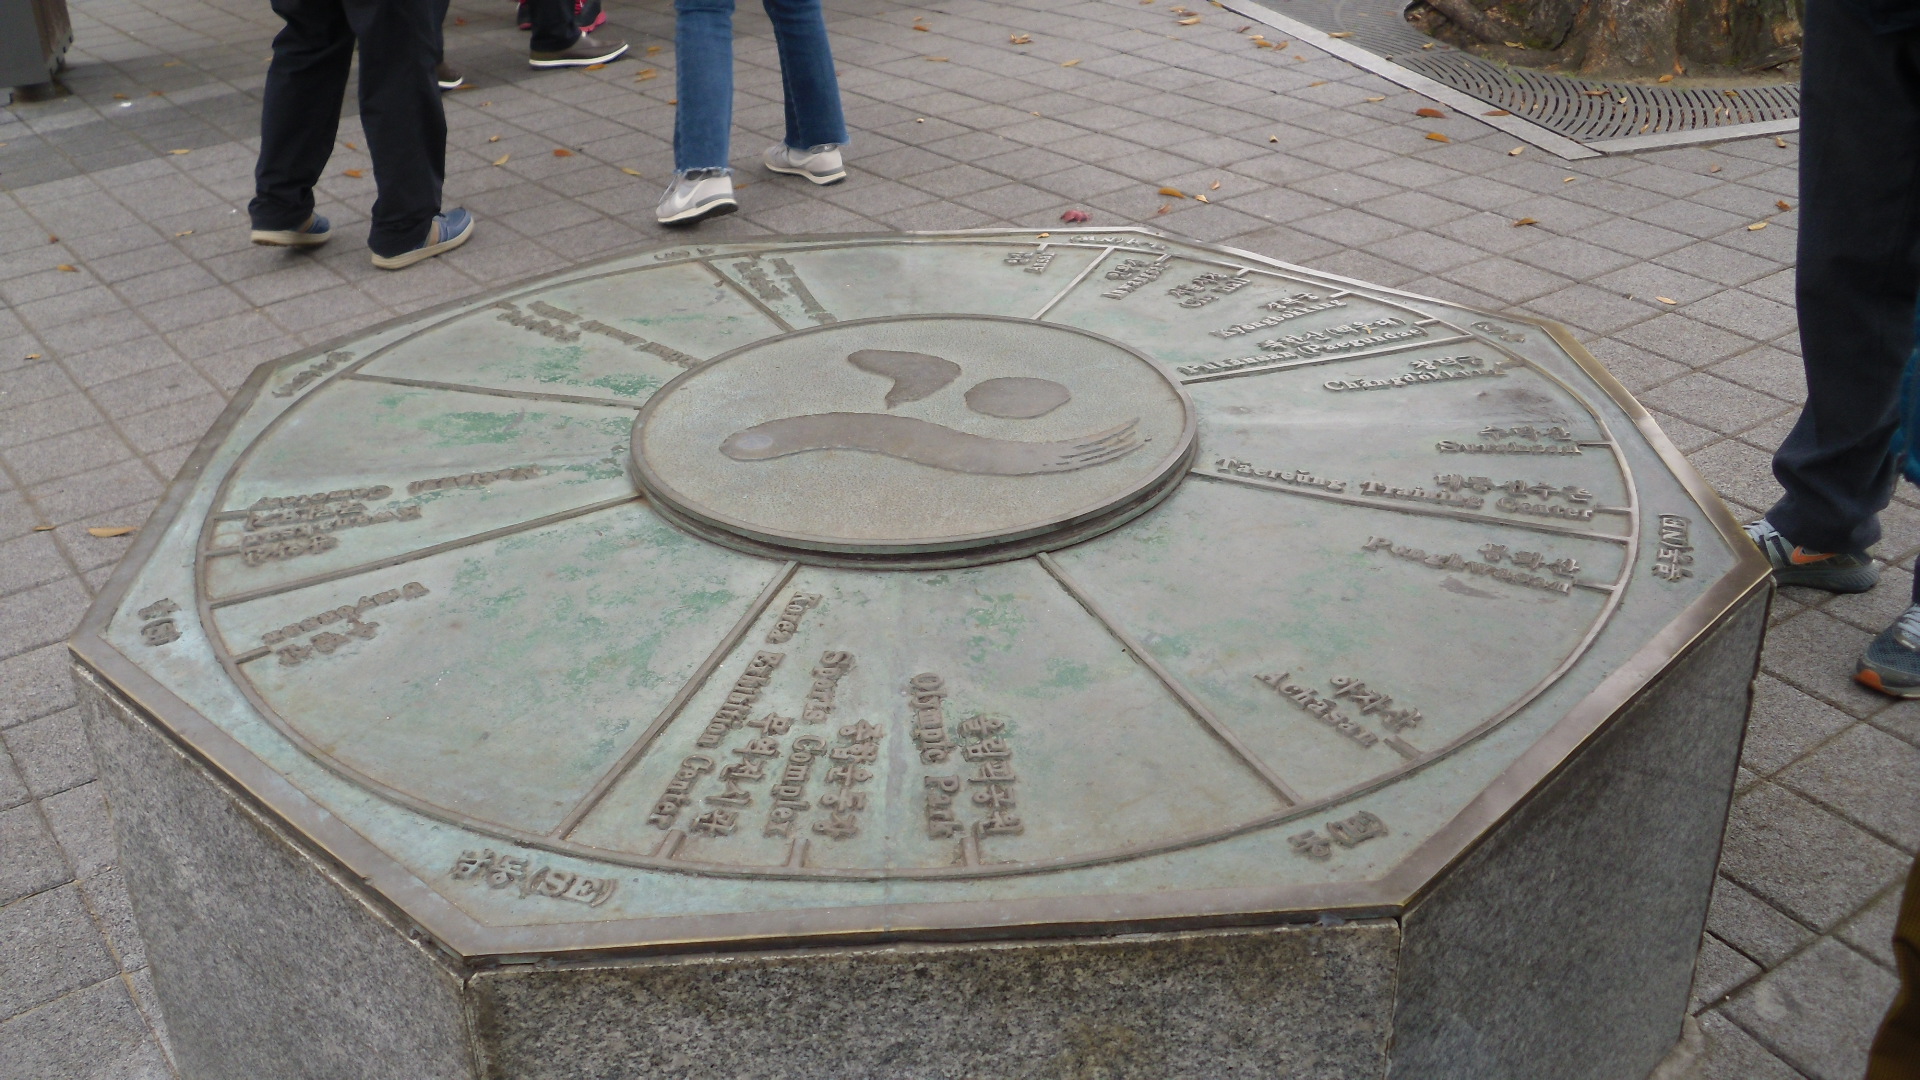 서울 중심점은 서울의 한가운데는 어디일까? 위성항법장치로 측량한 결과 서울의 지리적 중심점이 남산정상부에 있음을
확인하였다.